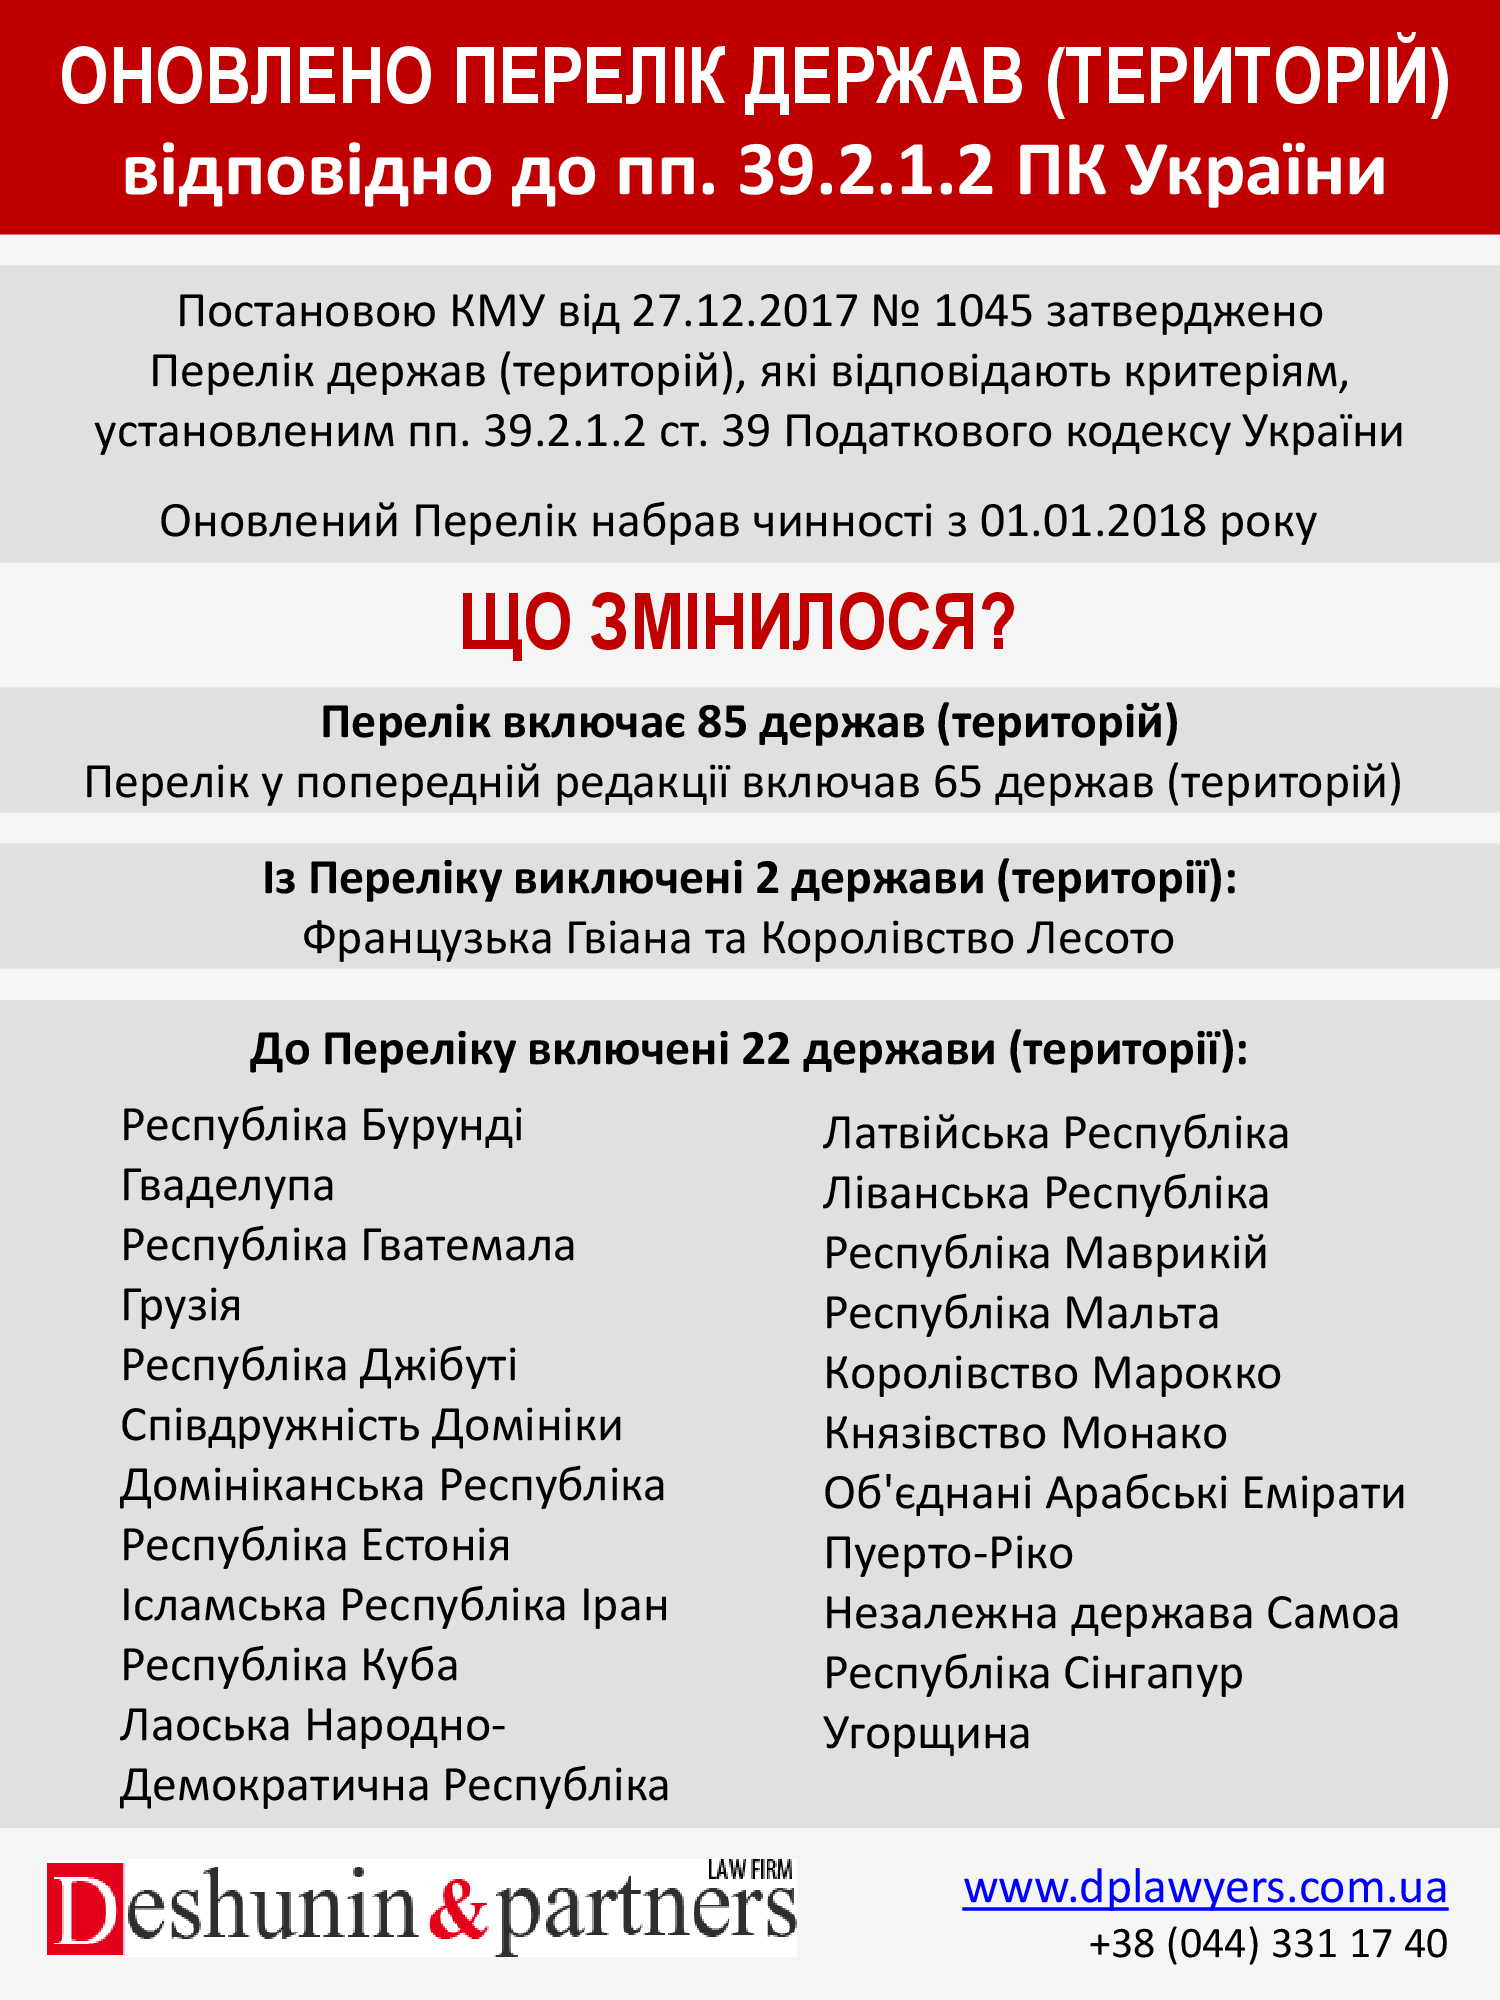 Обновлен Перечень государств (территорий) в соответствии с пп. 39.2.1.2 НК Украины [UA]